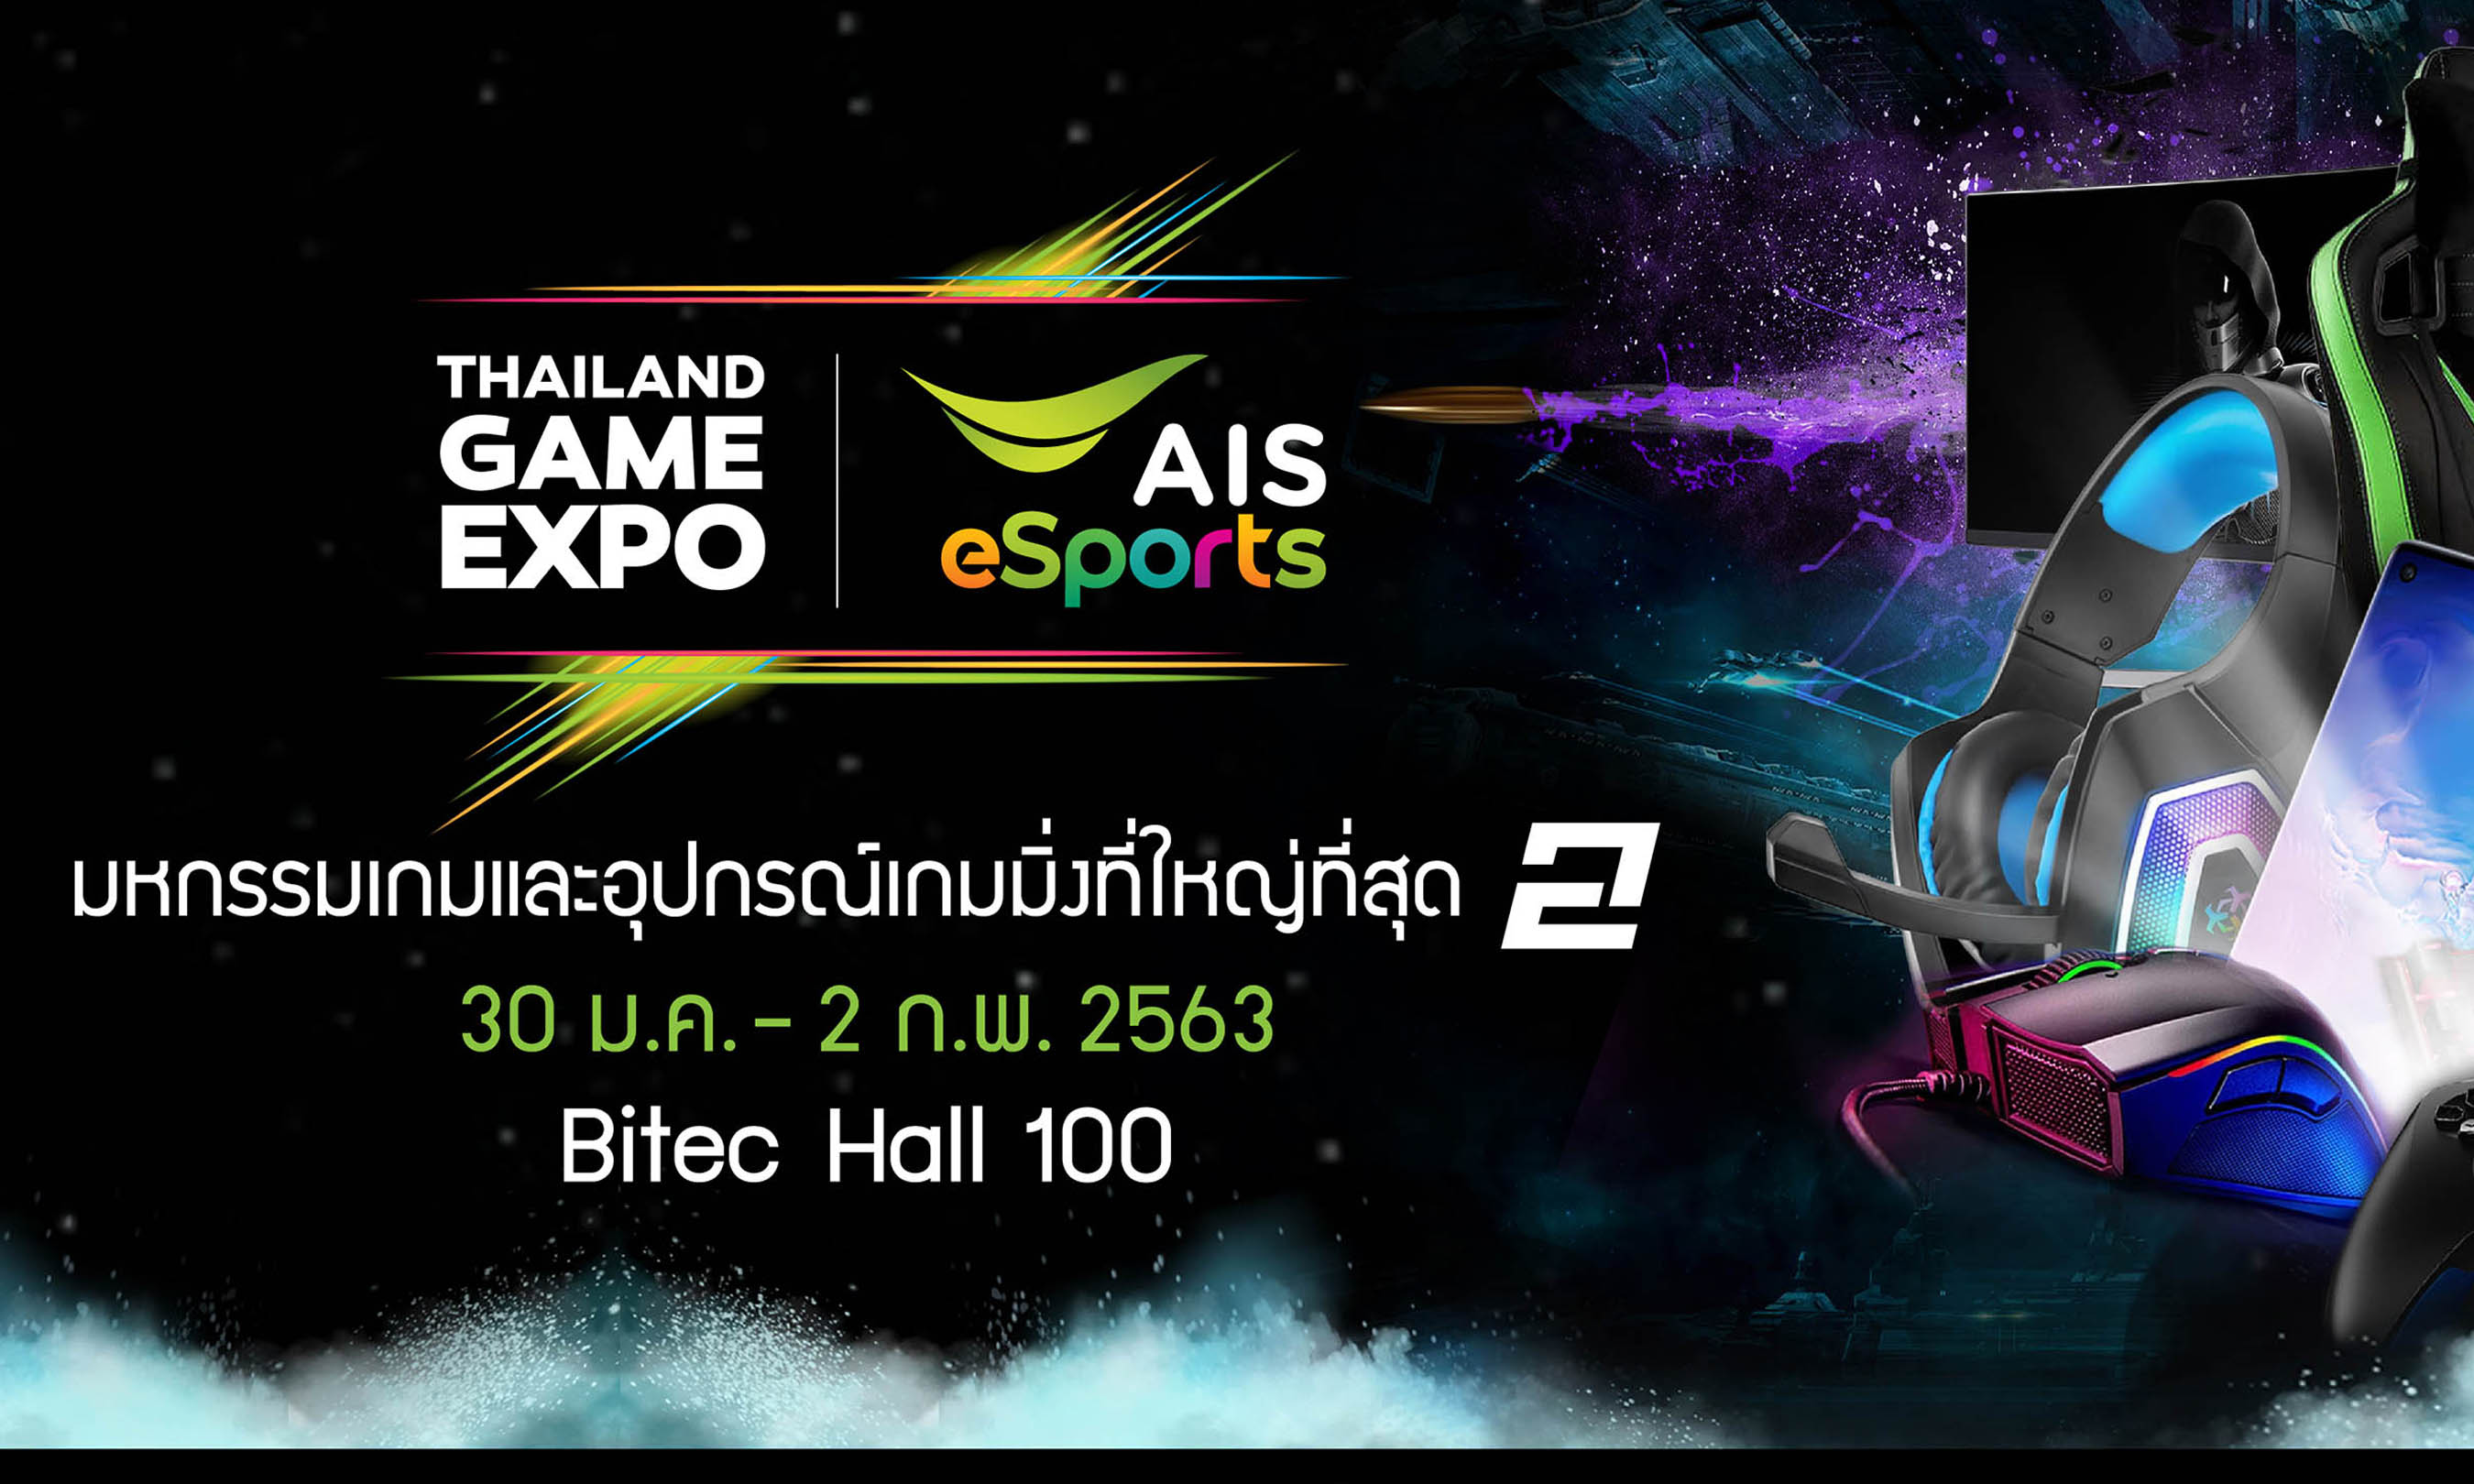 AIS ผนึก M Vision ระเบิดความมันส์จัด Thailand Game Expo by AIS eSports ครั้งที่ 2